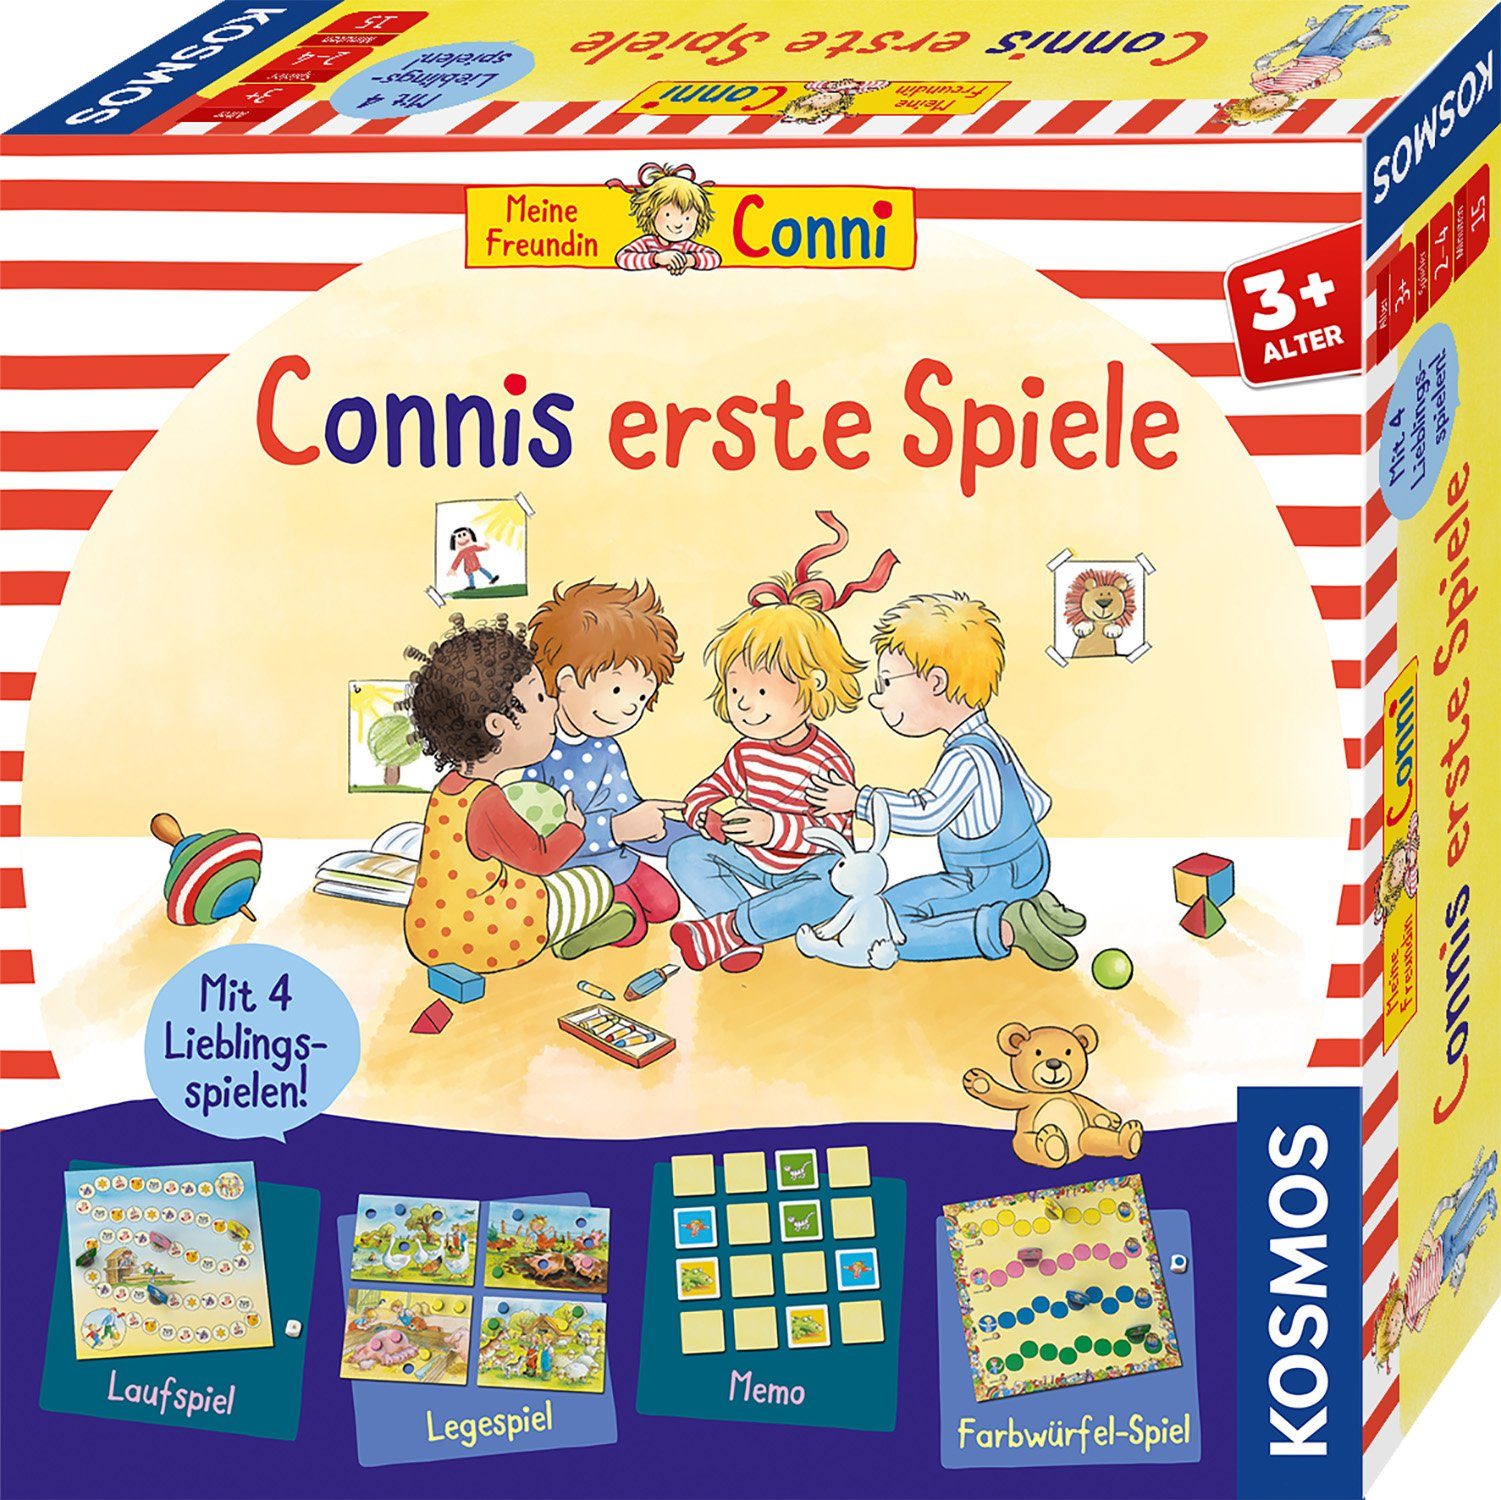 Spiele, Germany in erste Kosmos Kinderspiel Made Connis Spielesammlung,